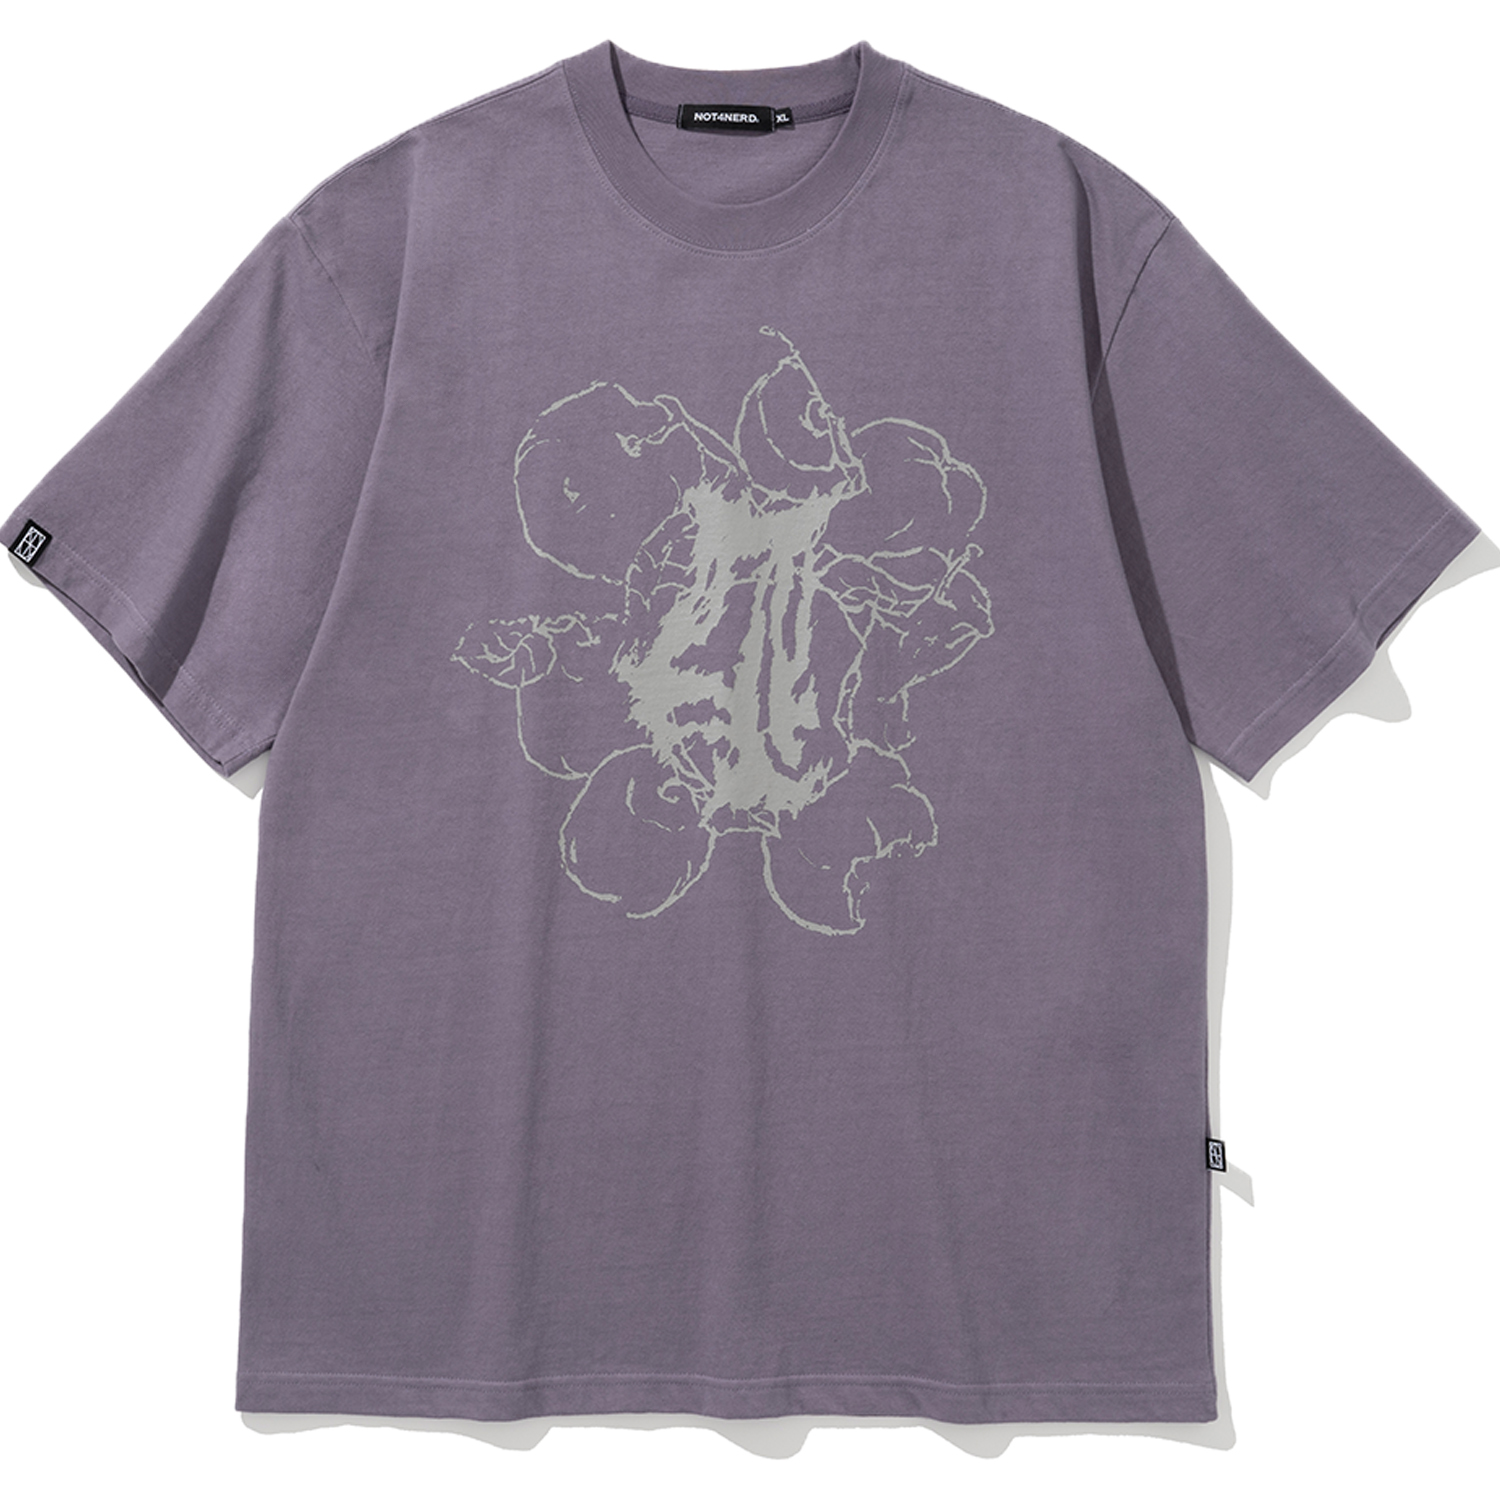 [4월 19일 예약배송] Pile Of Apples T-Shirts - Light Purple,NOT4NERD